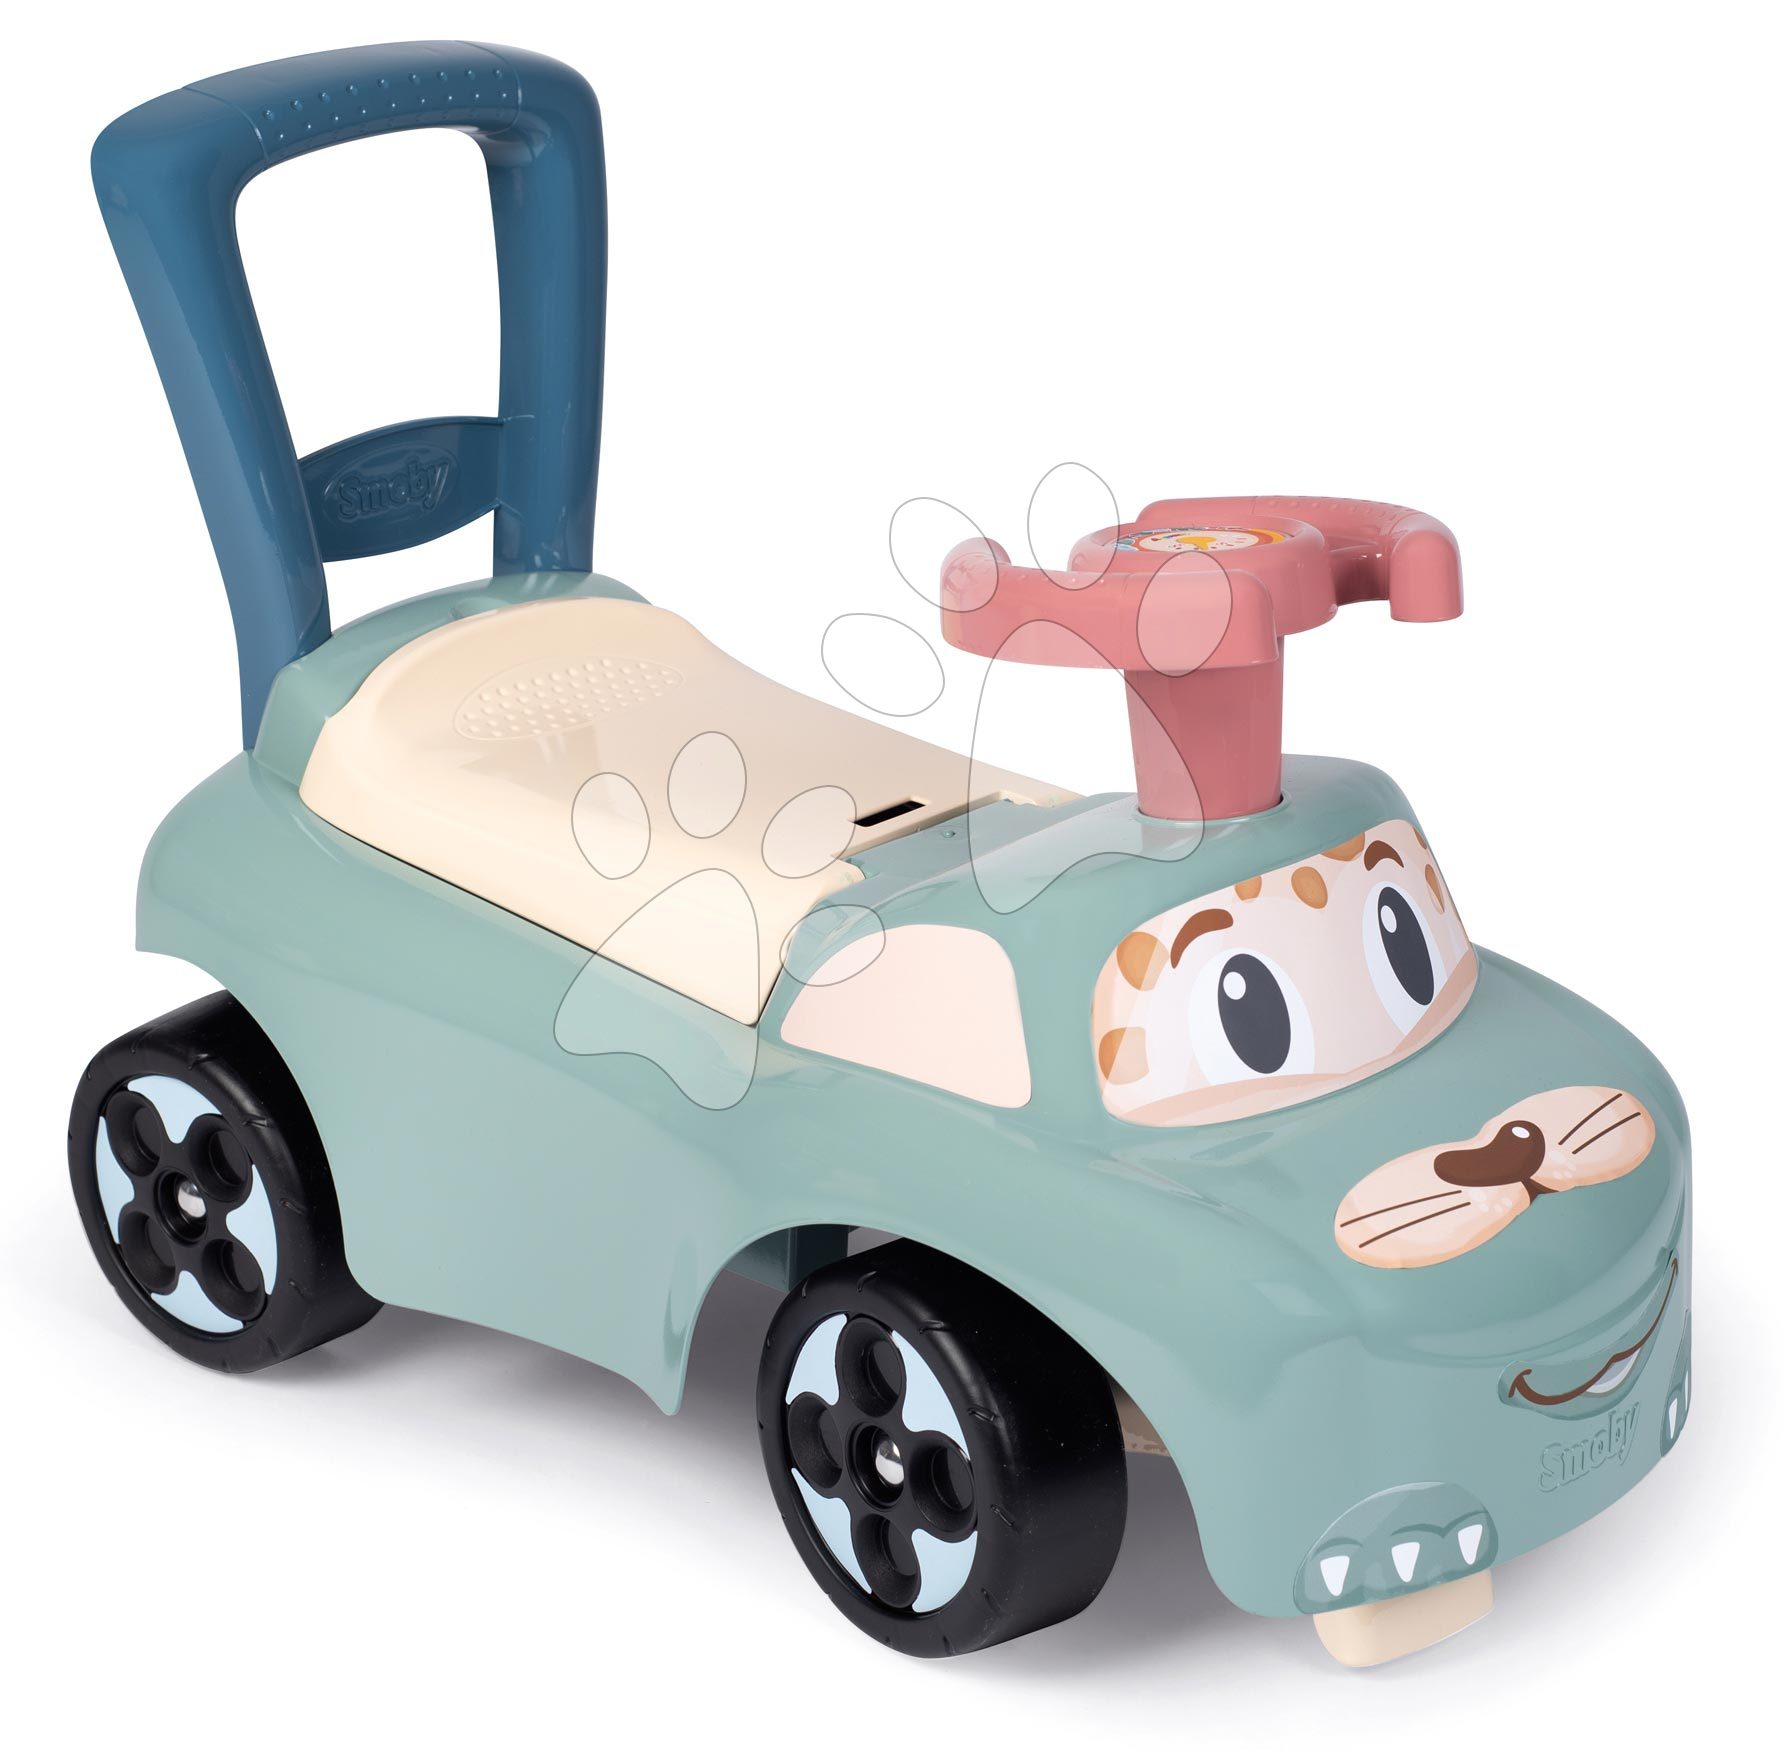 Odrážedla od 10 měsíců - Odrážedlo Auto Ride On Little Smoby ergonomicky tvarované s úložným prostorem od 10 měsíců